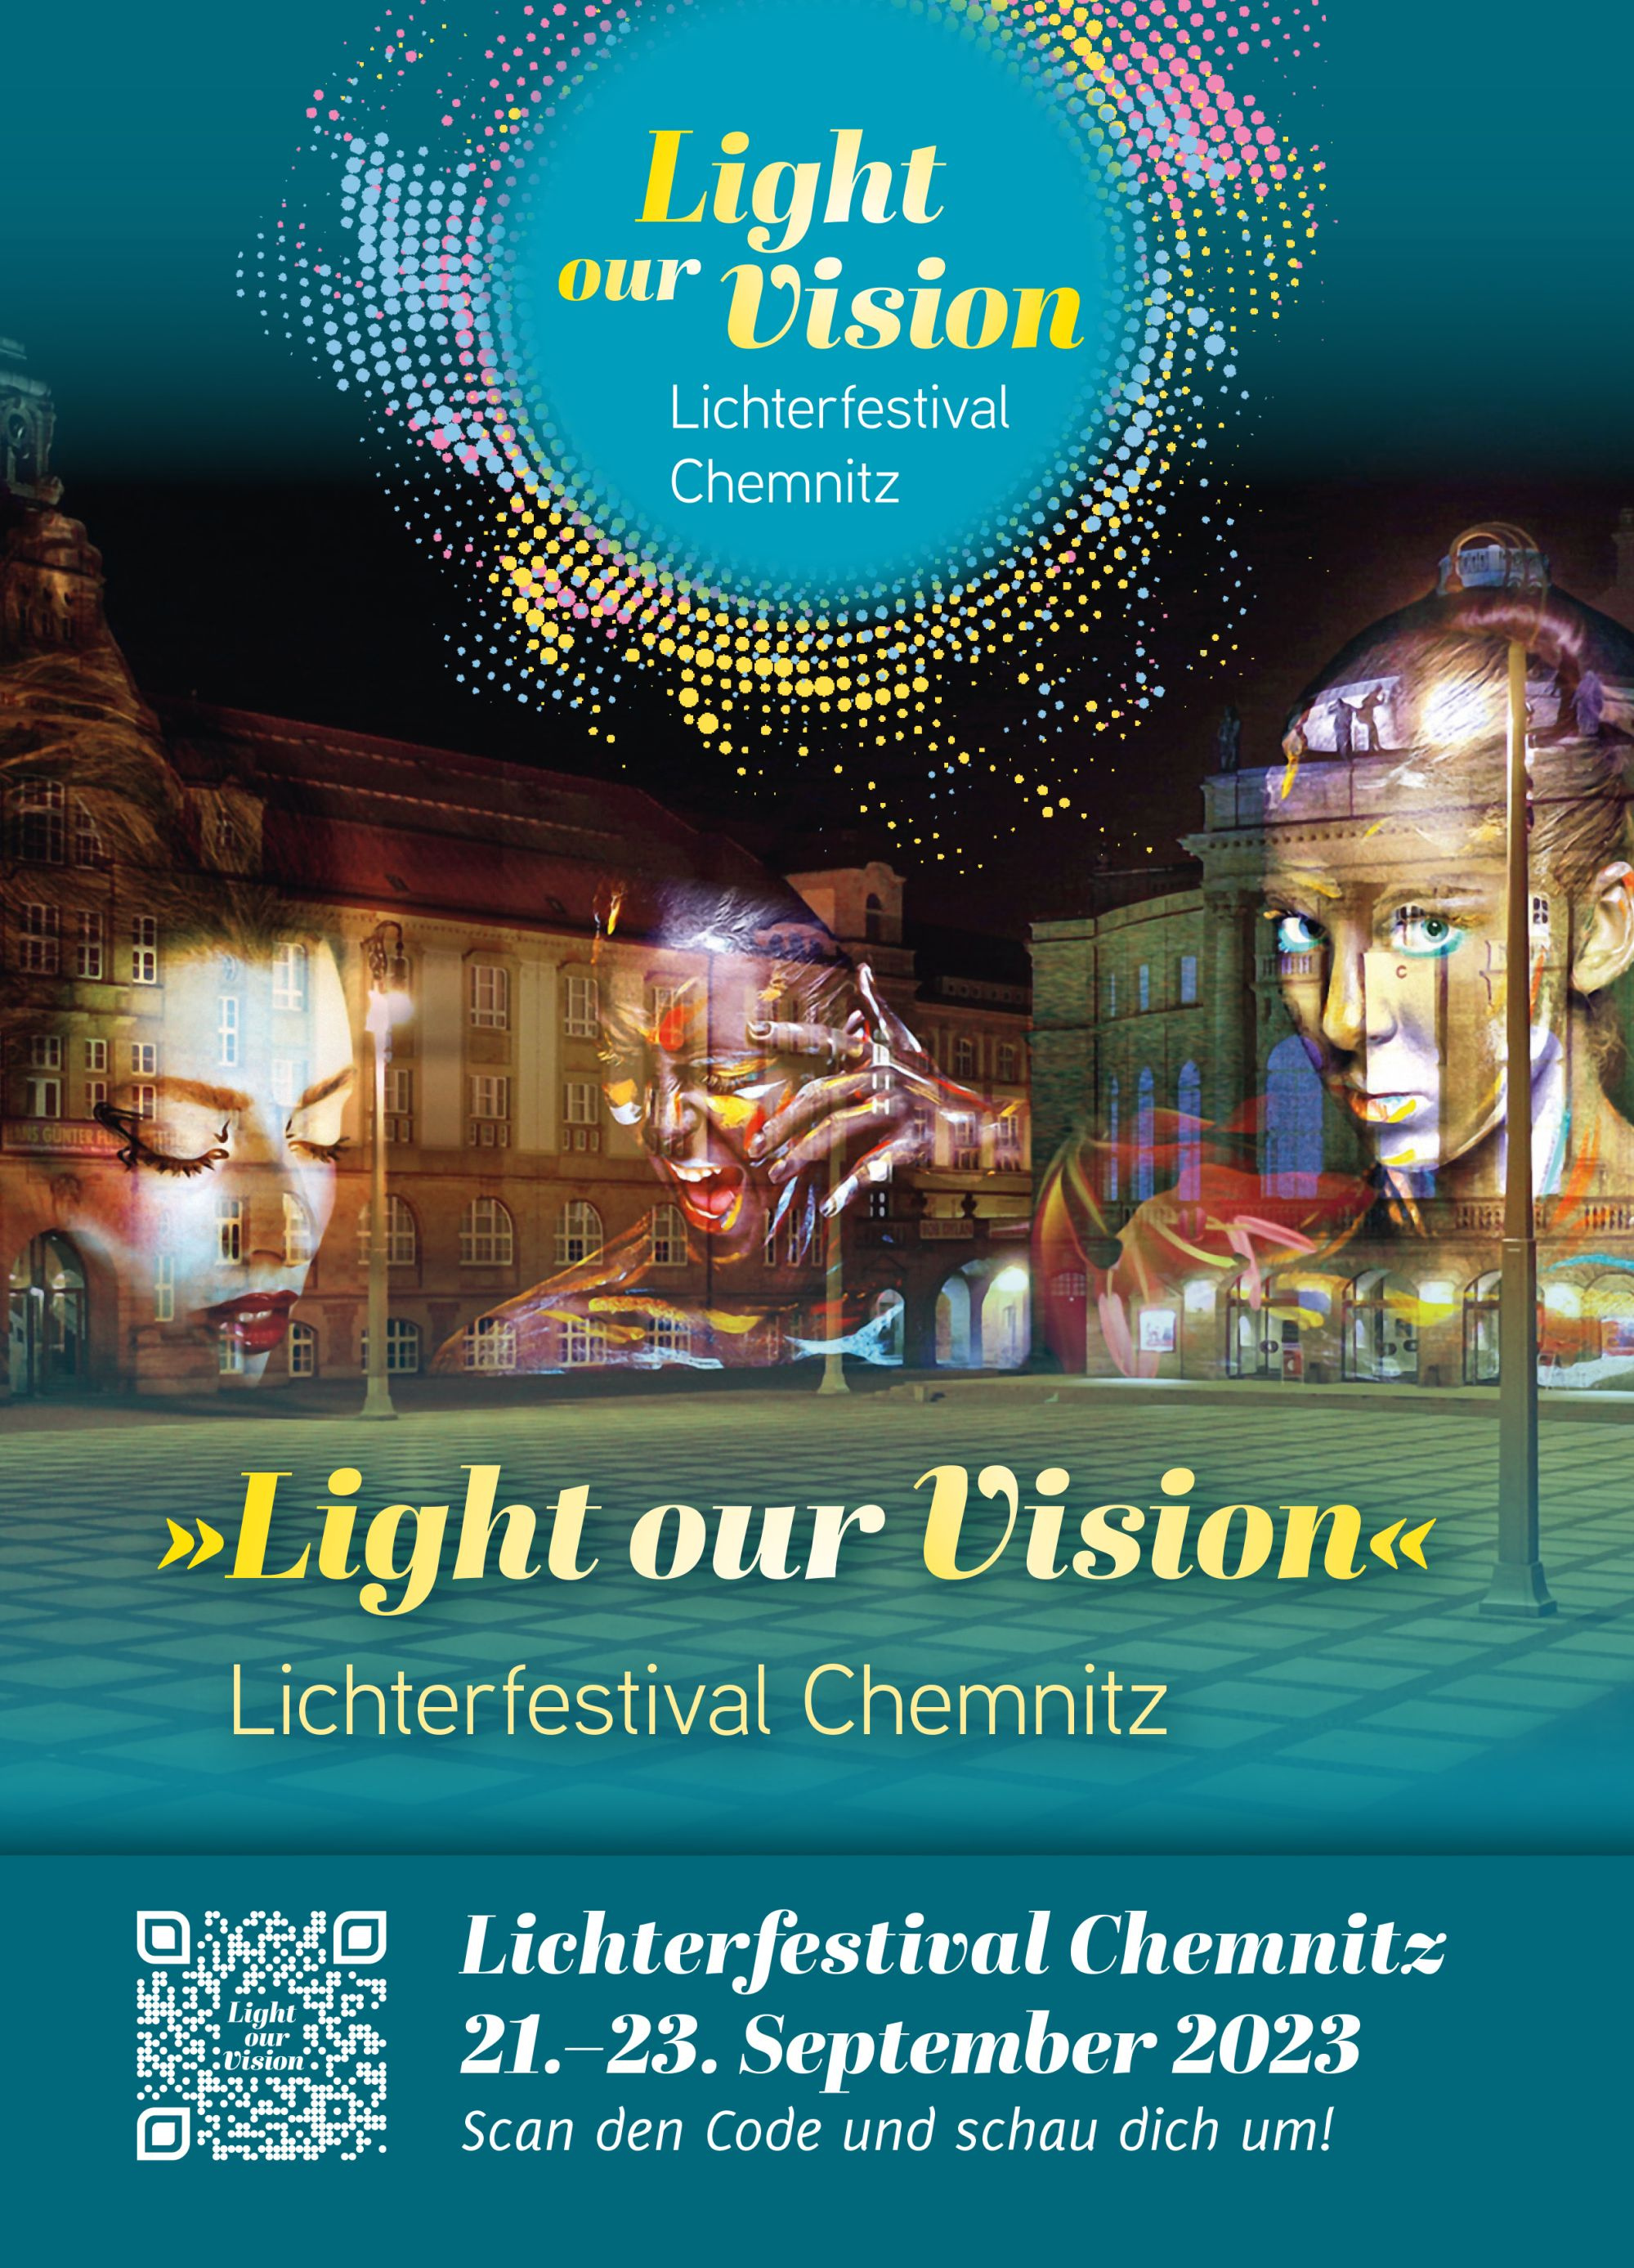 Light our vision - das Lichterfestival für Chemnitz